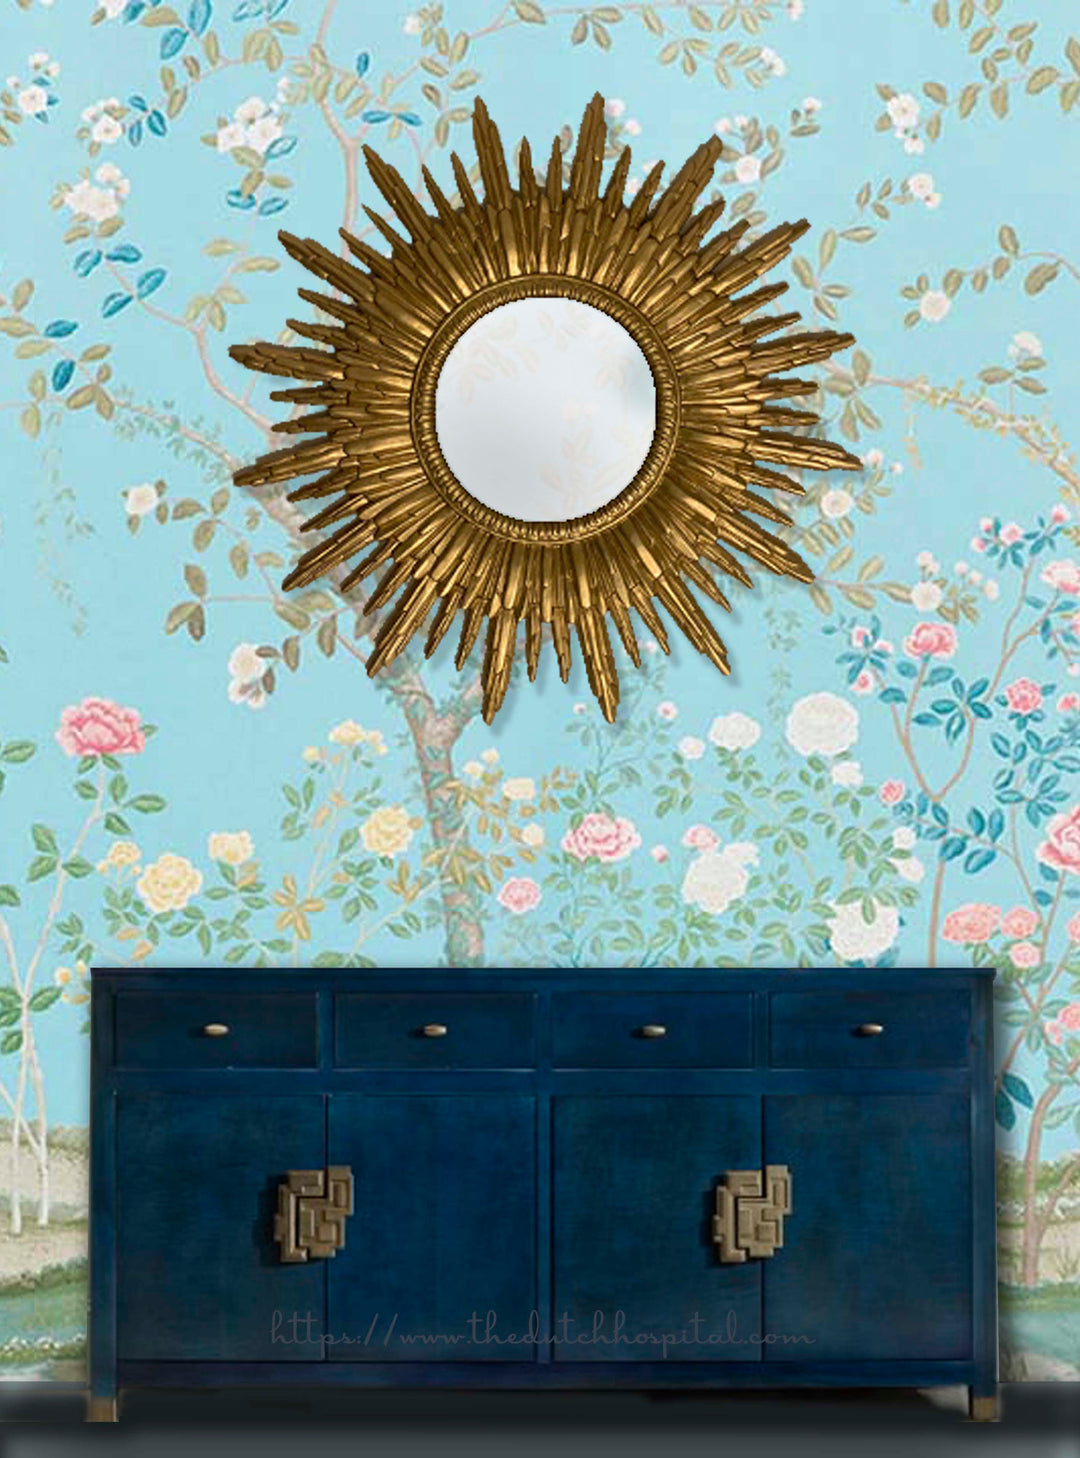 Gold Sunburst Wall Mirror, French Baroque Style Starburst Mirror